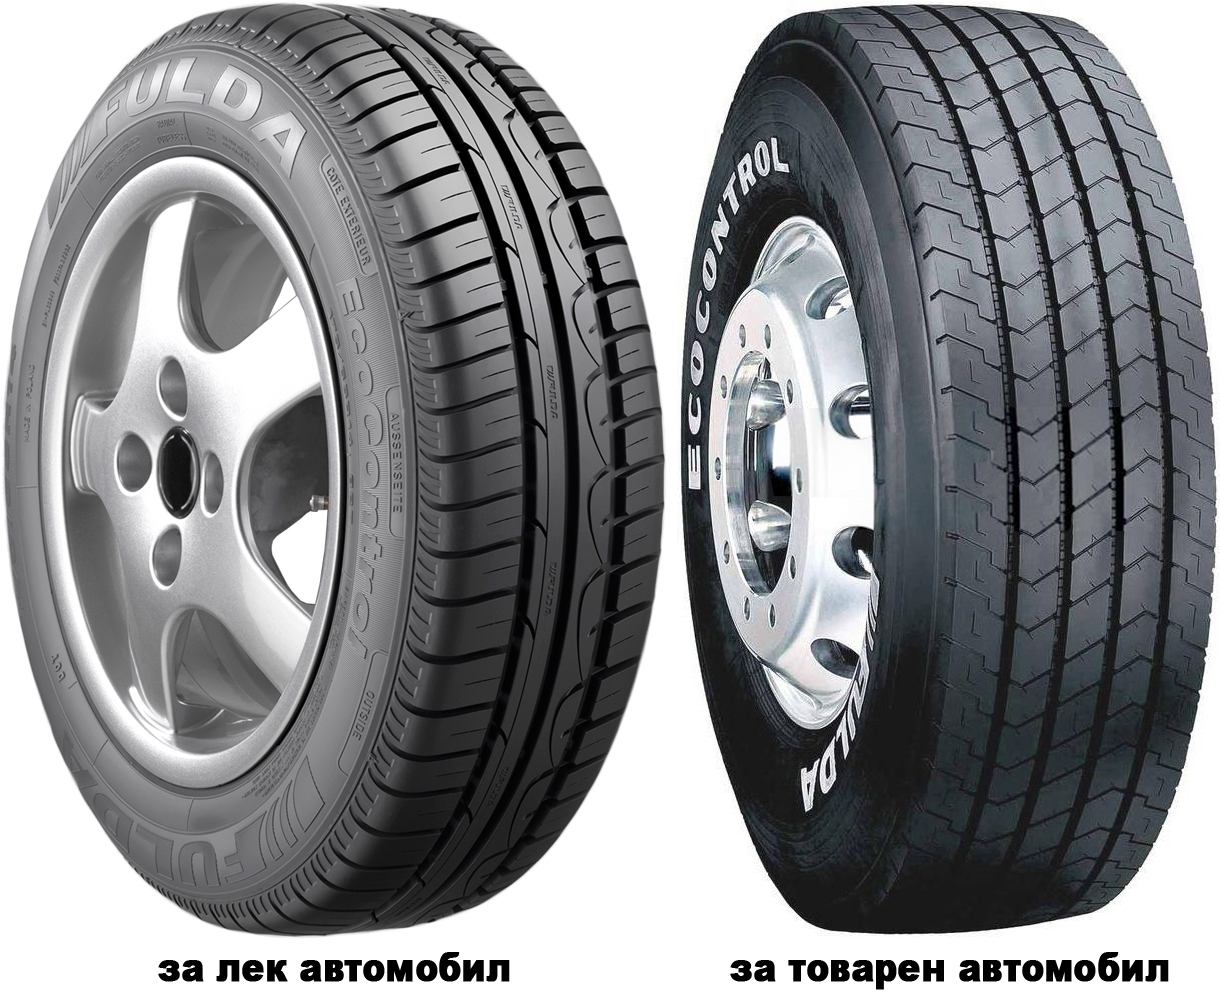 Автомобилни гуми FULDA ECOCONTROL 185/65 R14 101T